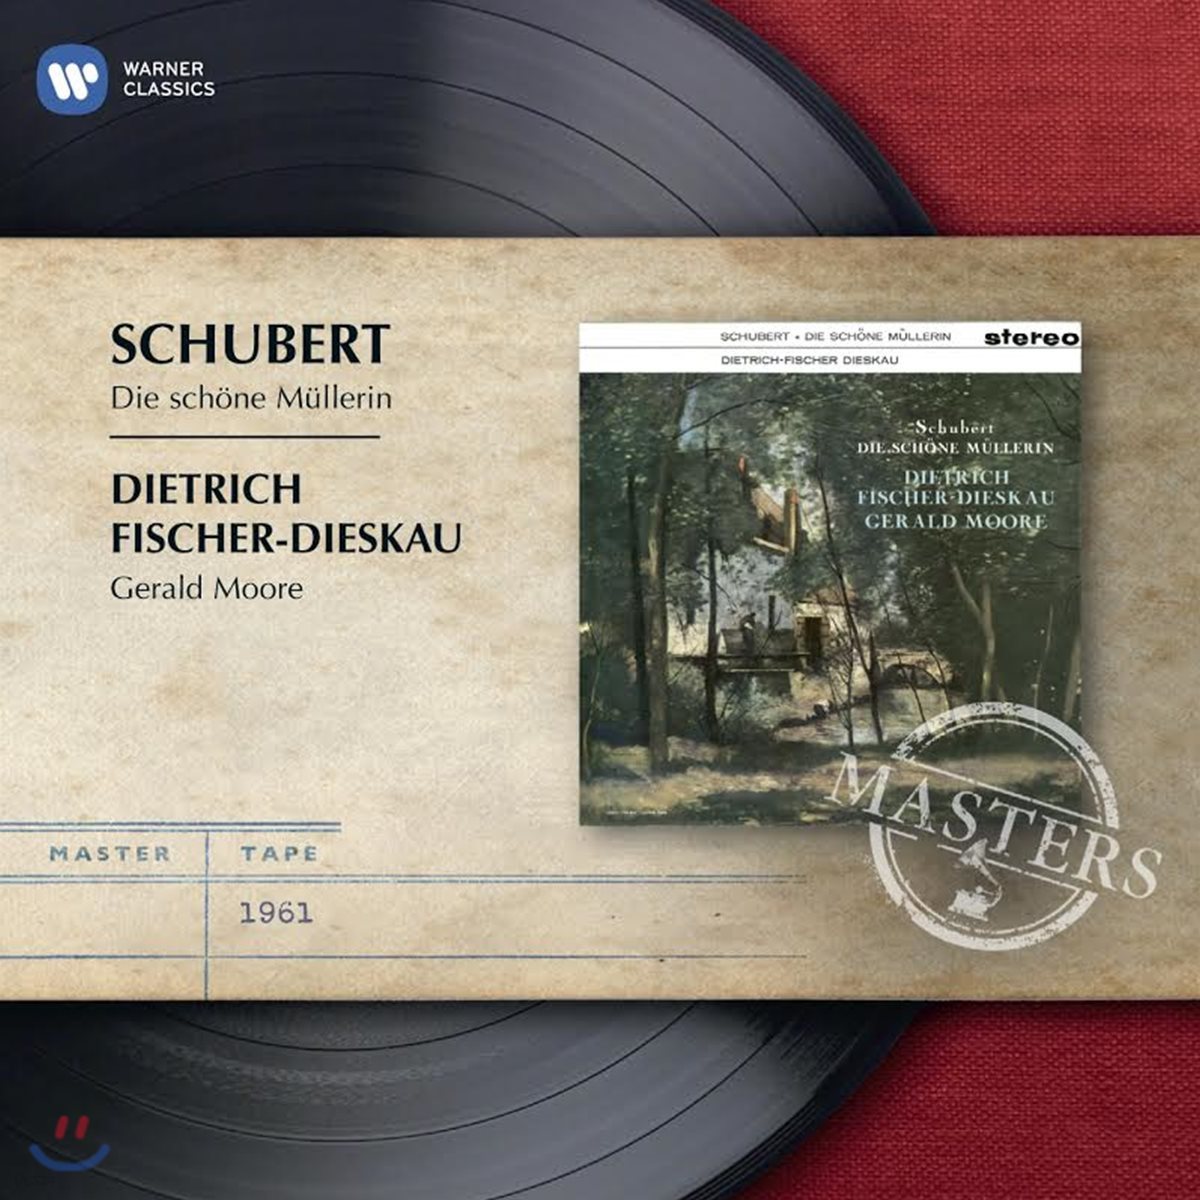 Dietrich Fischer-Dieskau 슈베르트: 아름다운 물방앗간의 아가씨 - 피셔-디스카우 (Schubert: Die schone Mullerin D795)